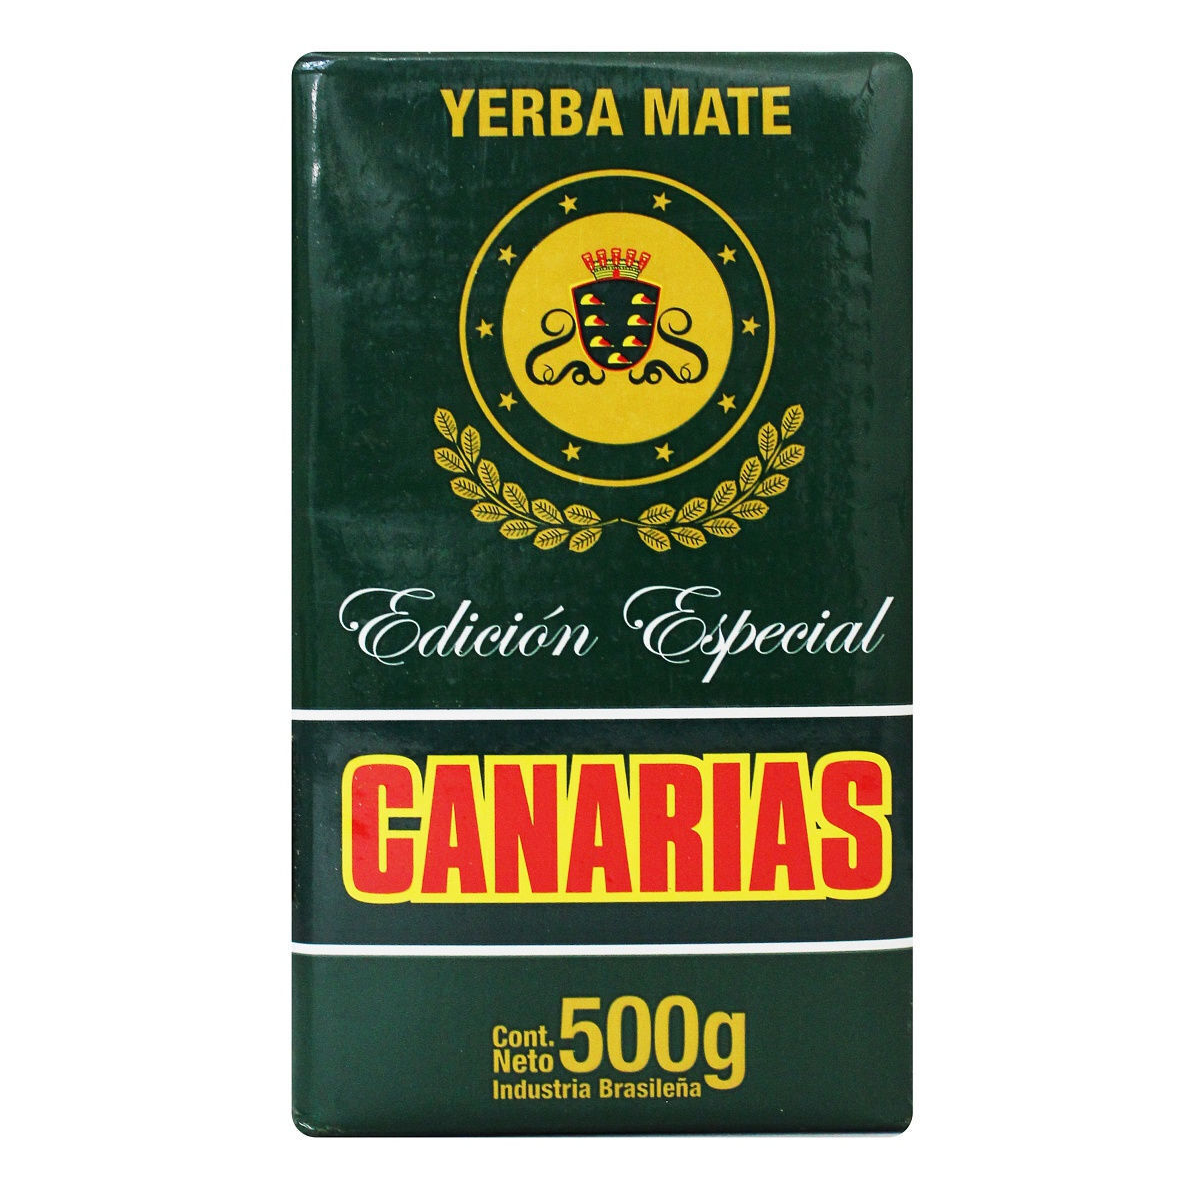 Чай йерба мате Canarias Edicion Especial, бразильский отборный, мелкого помола, 500 г